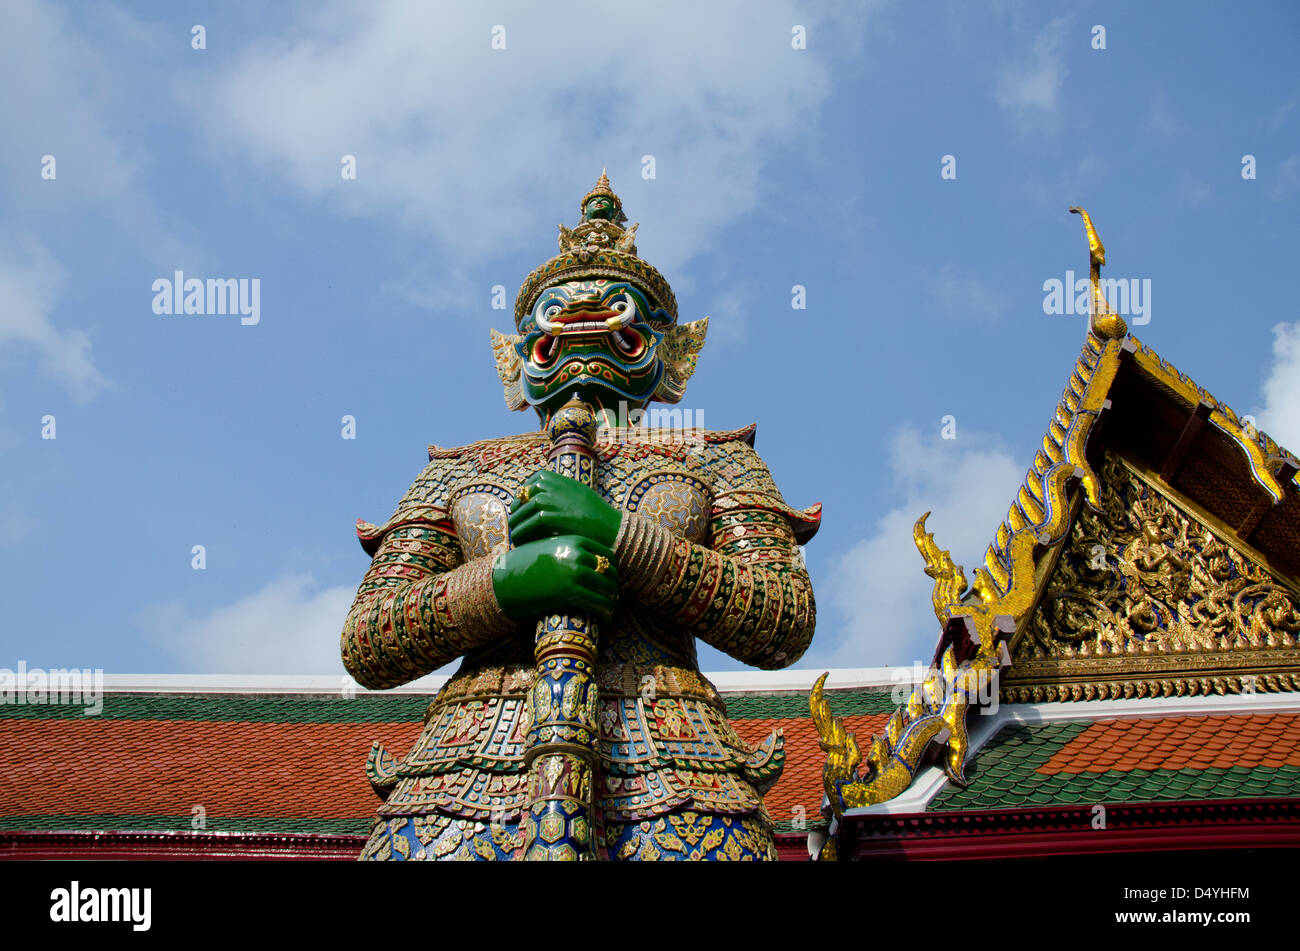 Tailandia, Bangkok. El Grand Palace. La terraza superior monumentos con criatura mitológica. Foto de stock